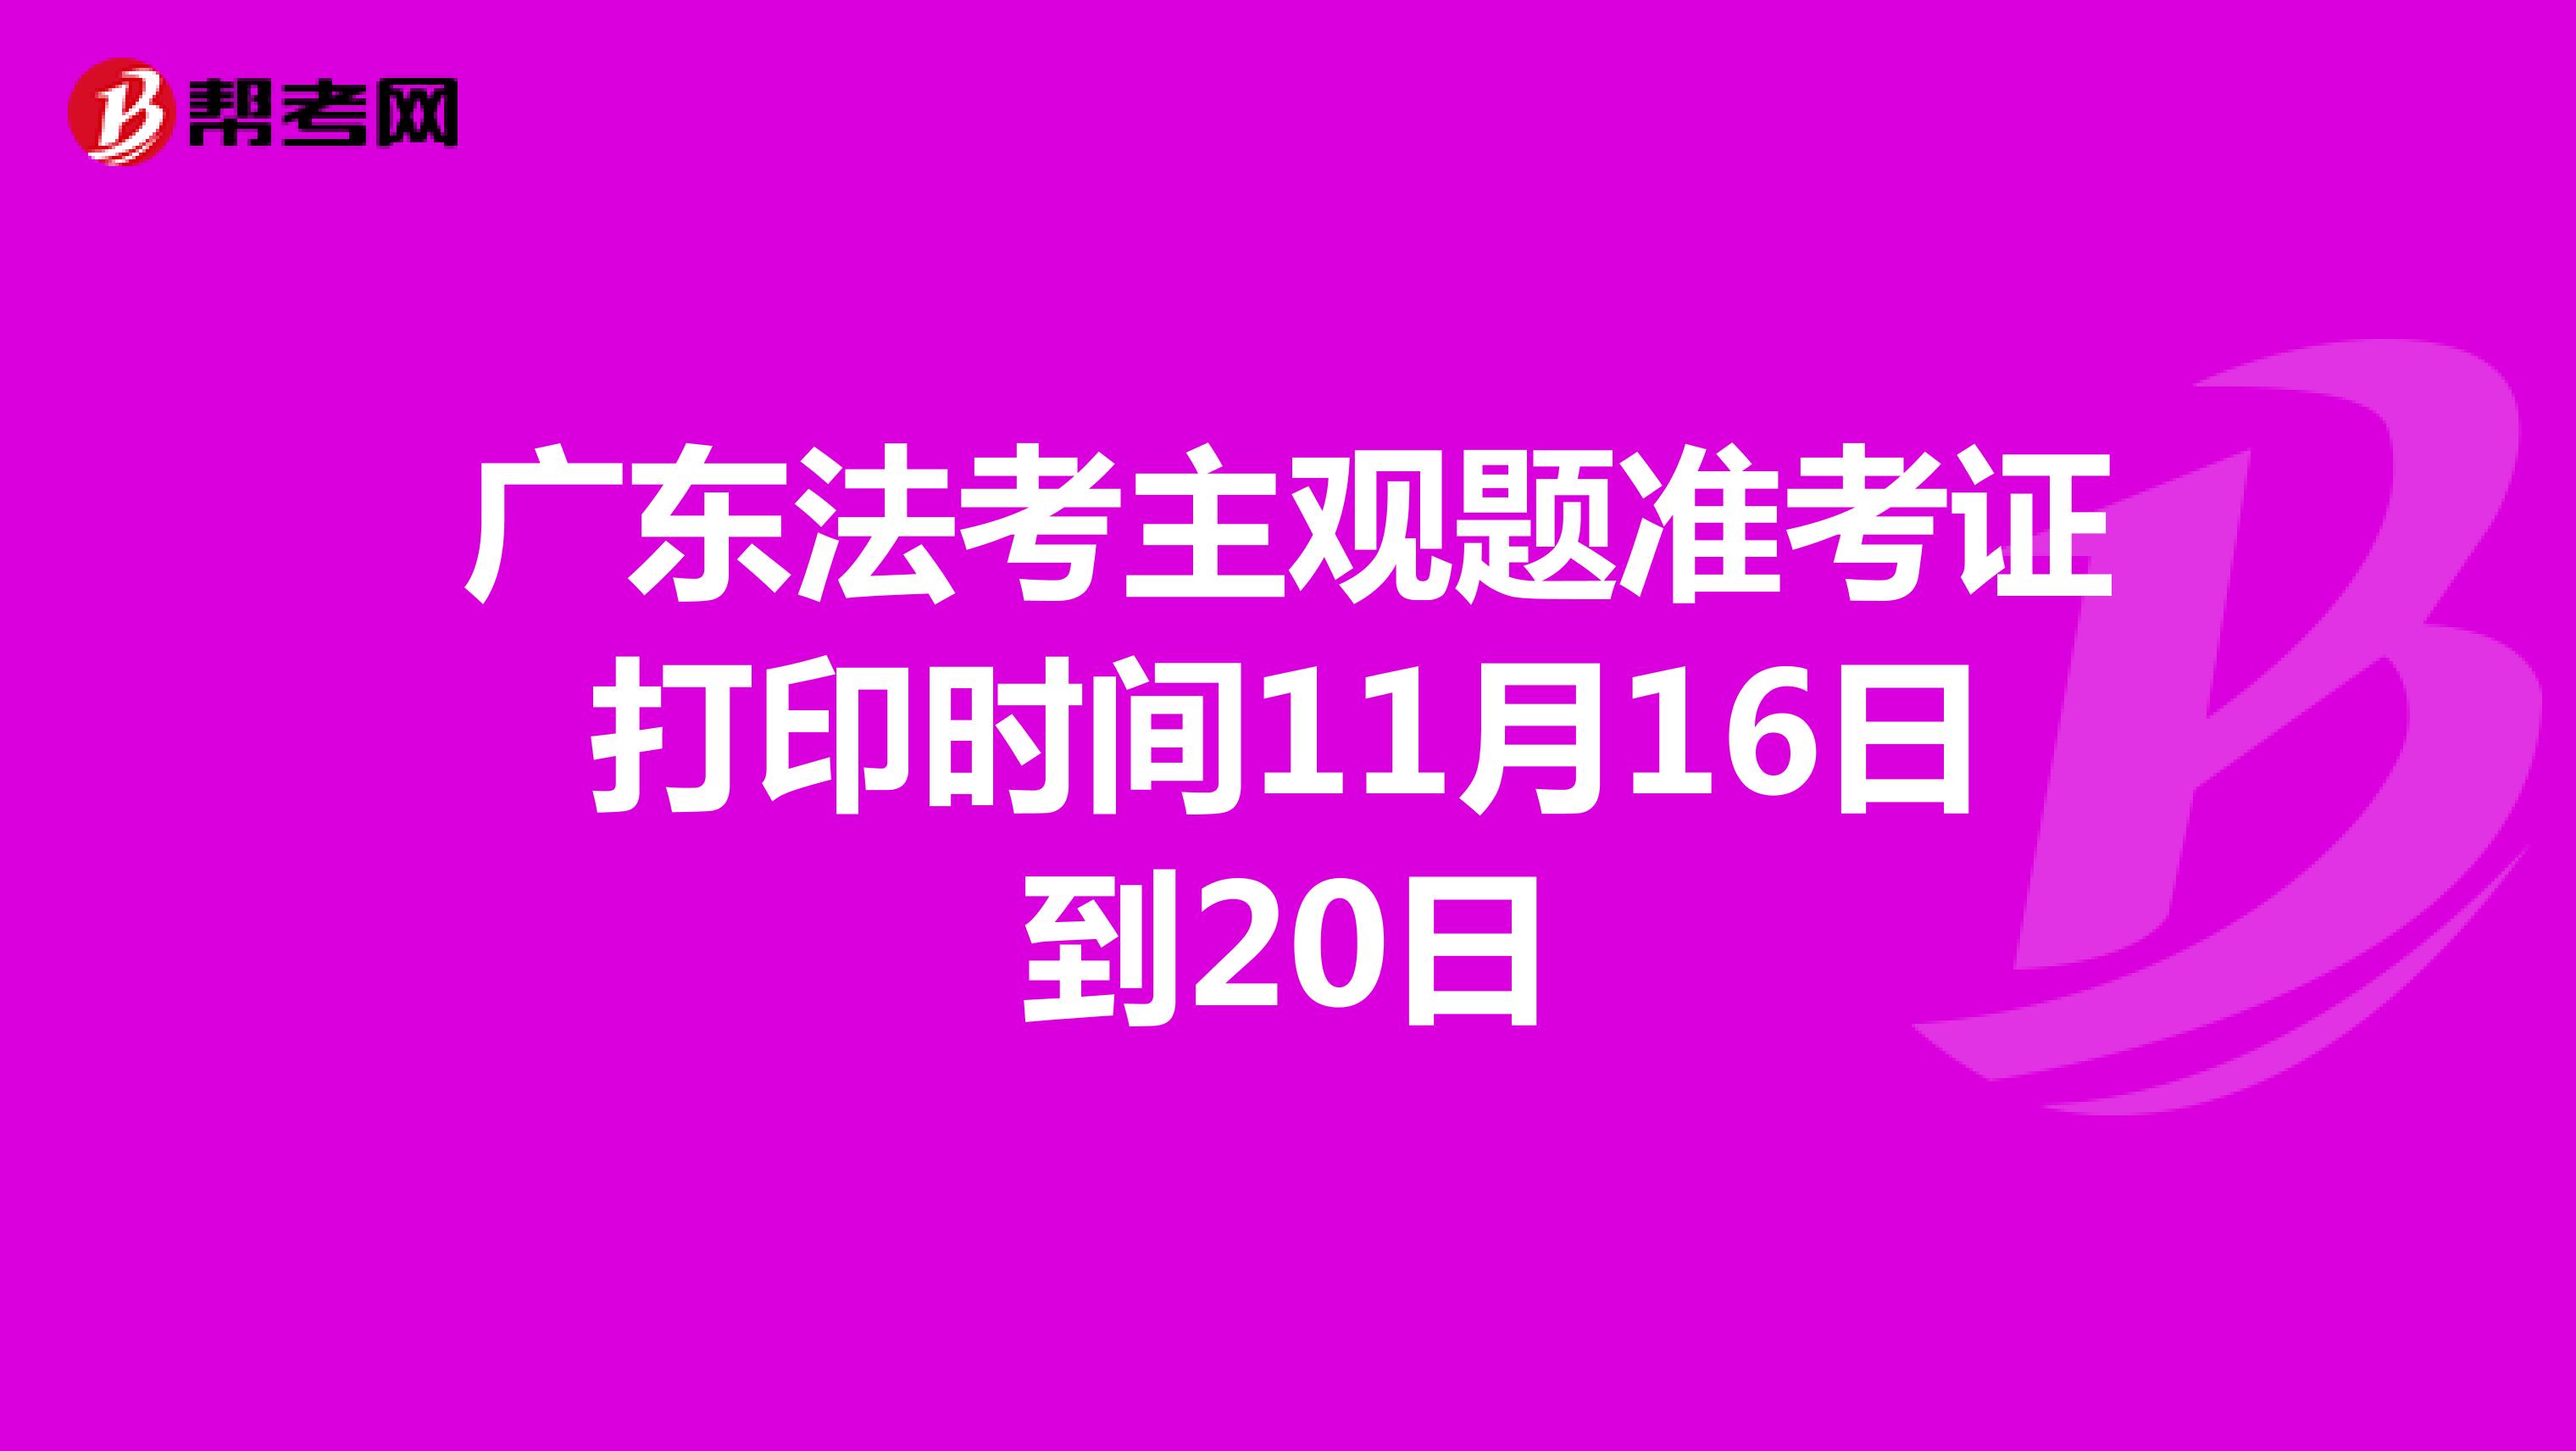 广东法考主观题准考证打印时间11月16日到20日